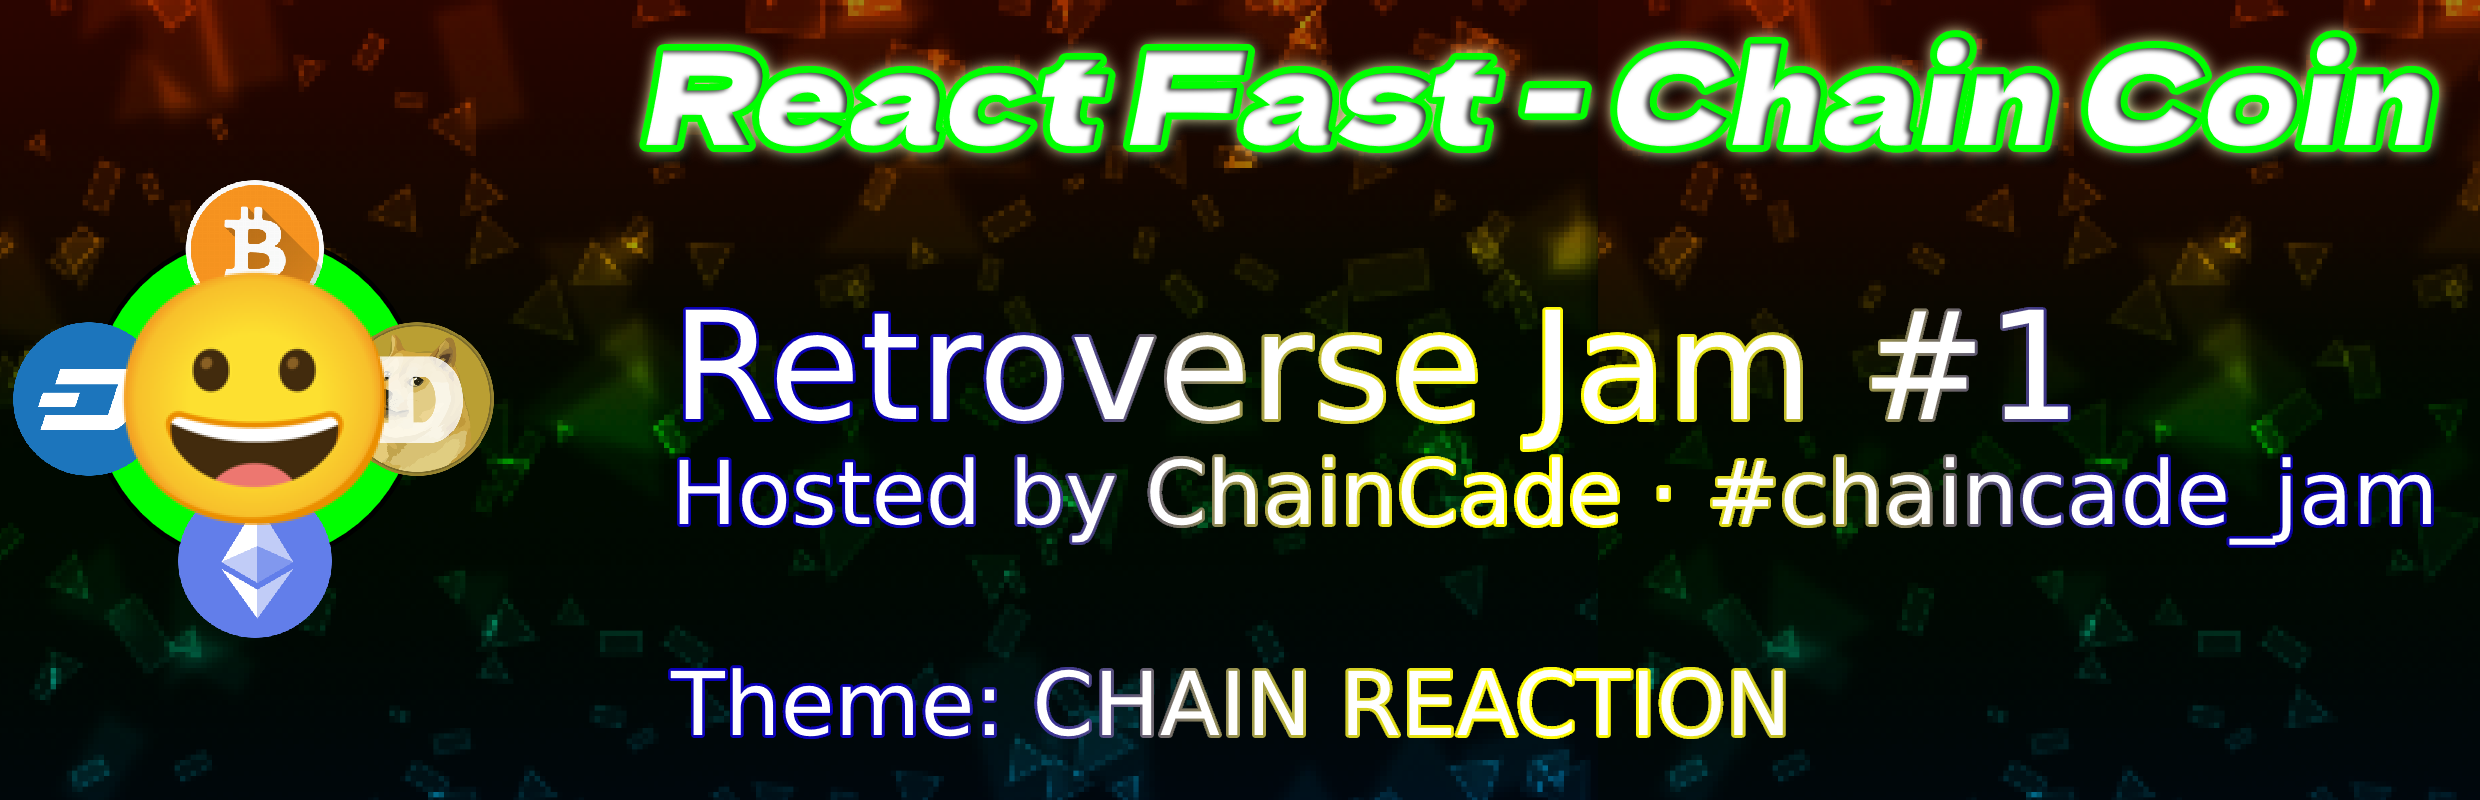 React Fast - Chain Coin